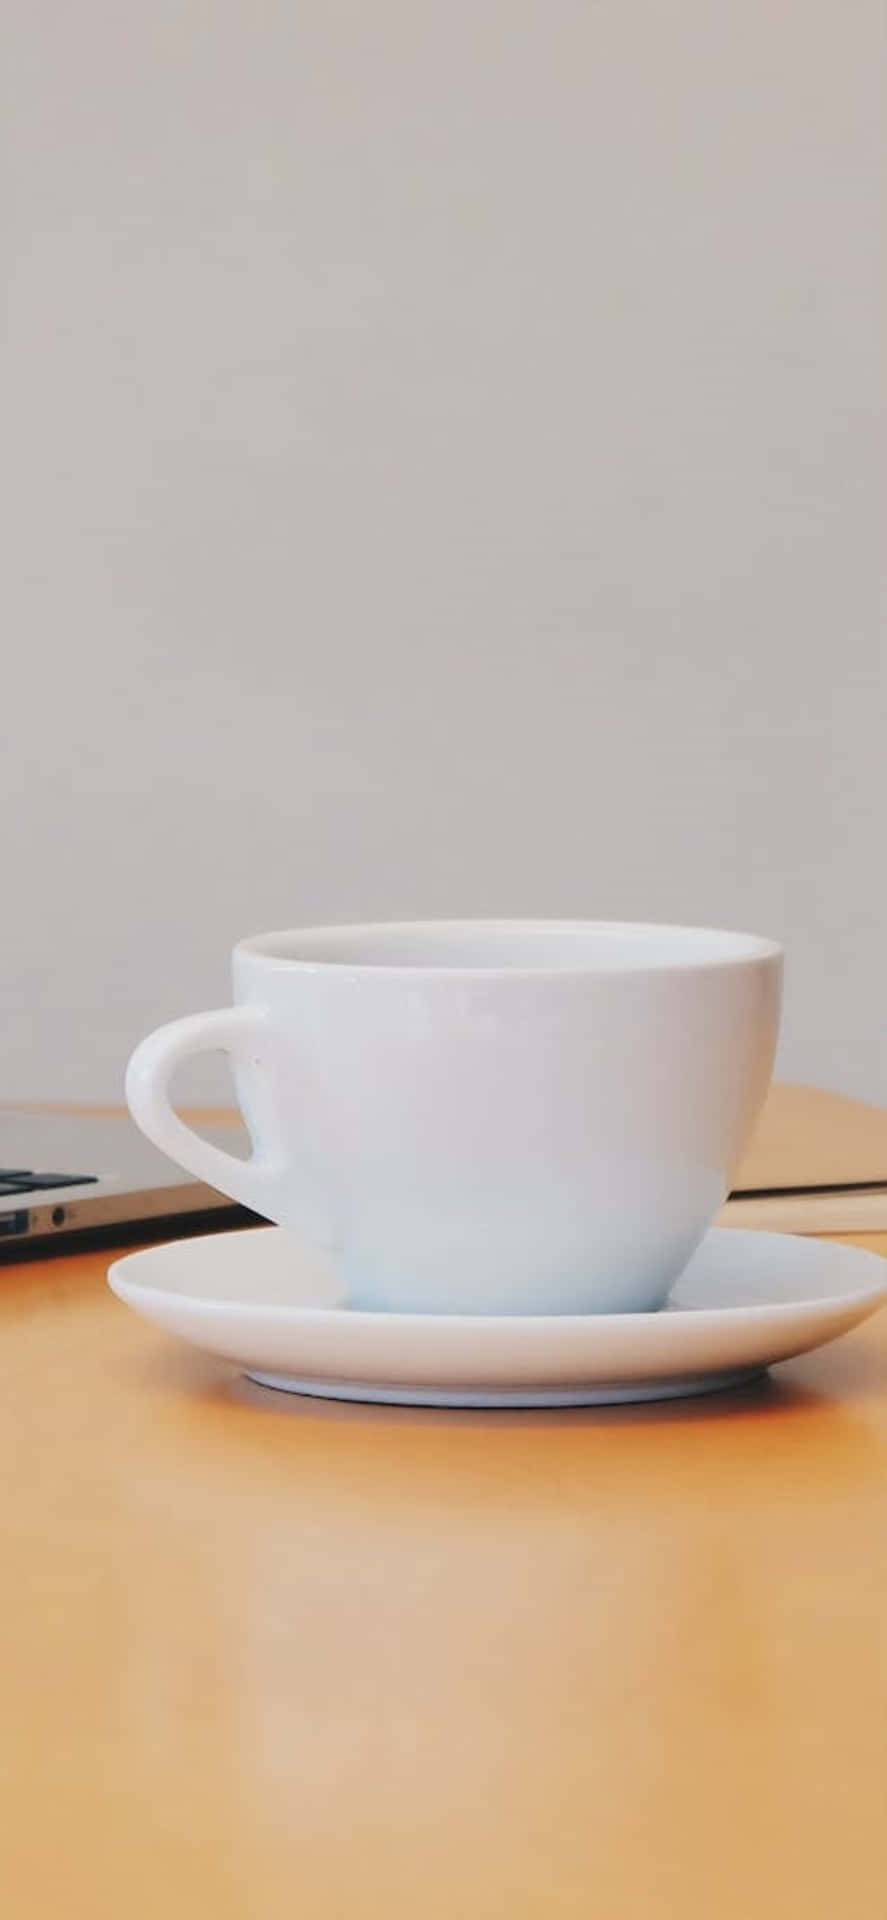 Iphonex-skrivbordsbakgrund Med Vit Kaffekopp.